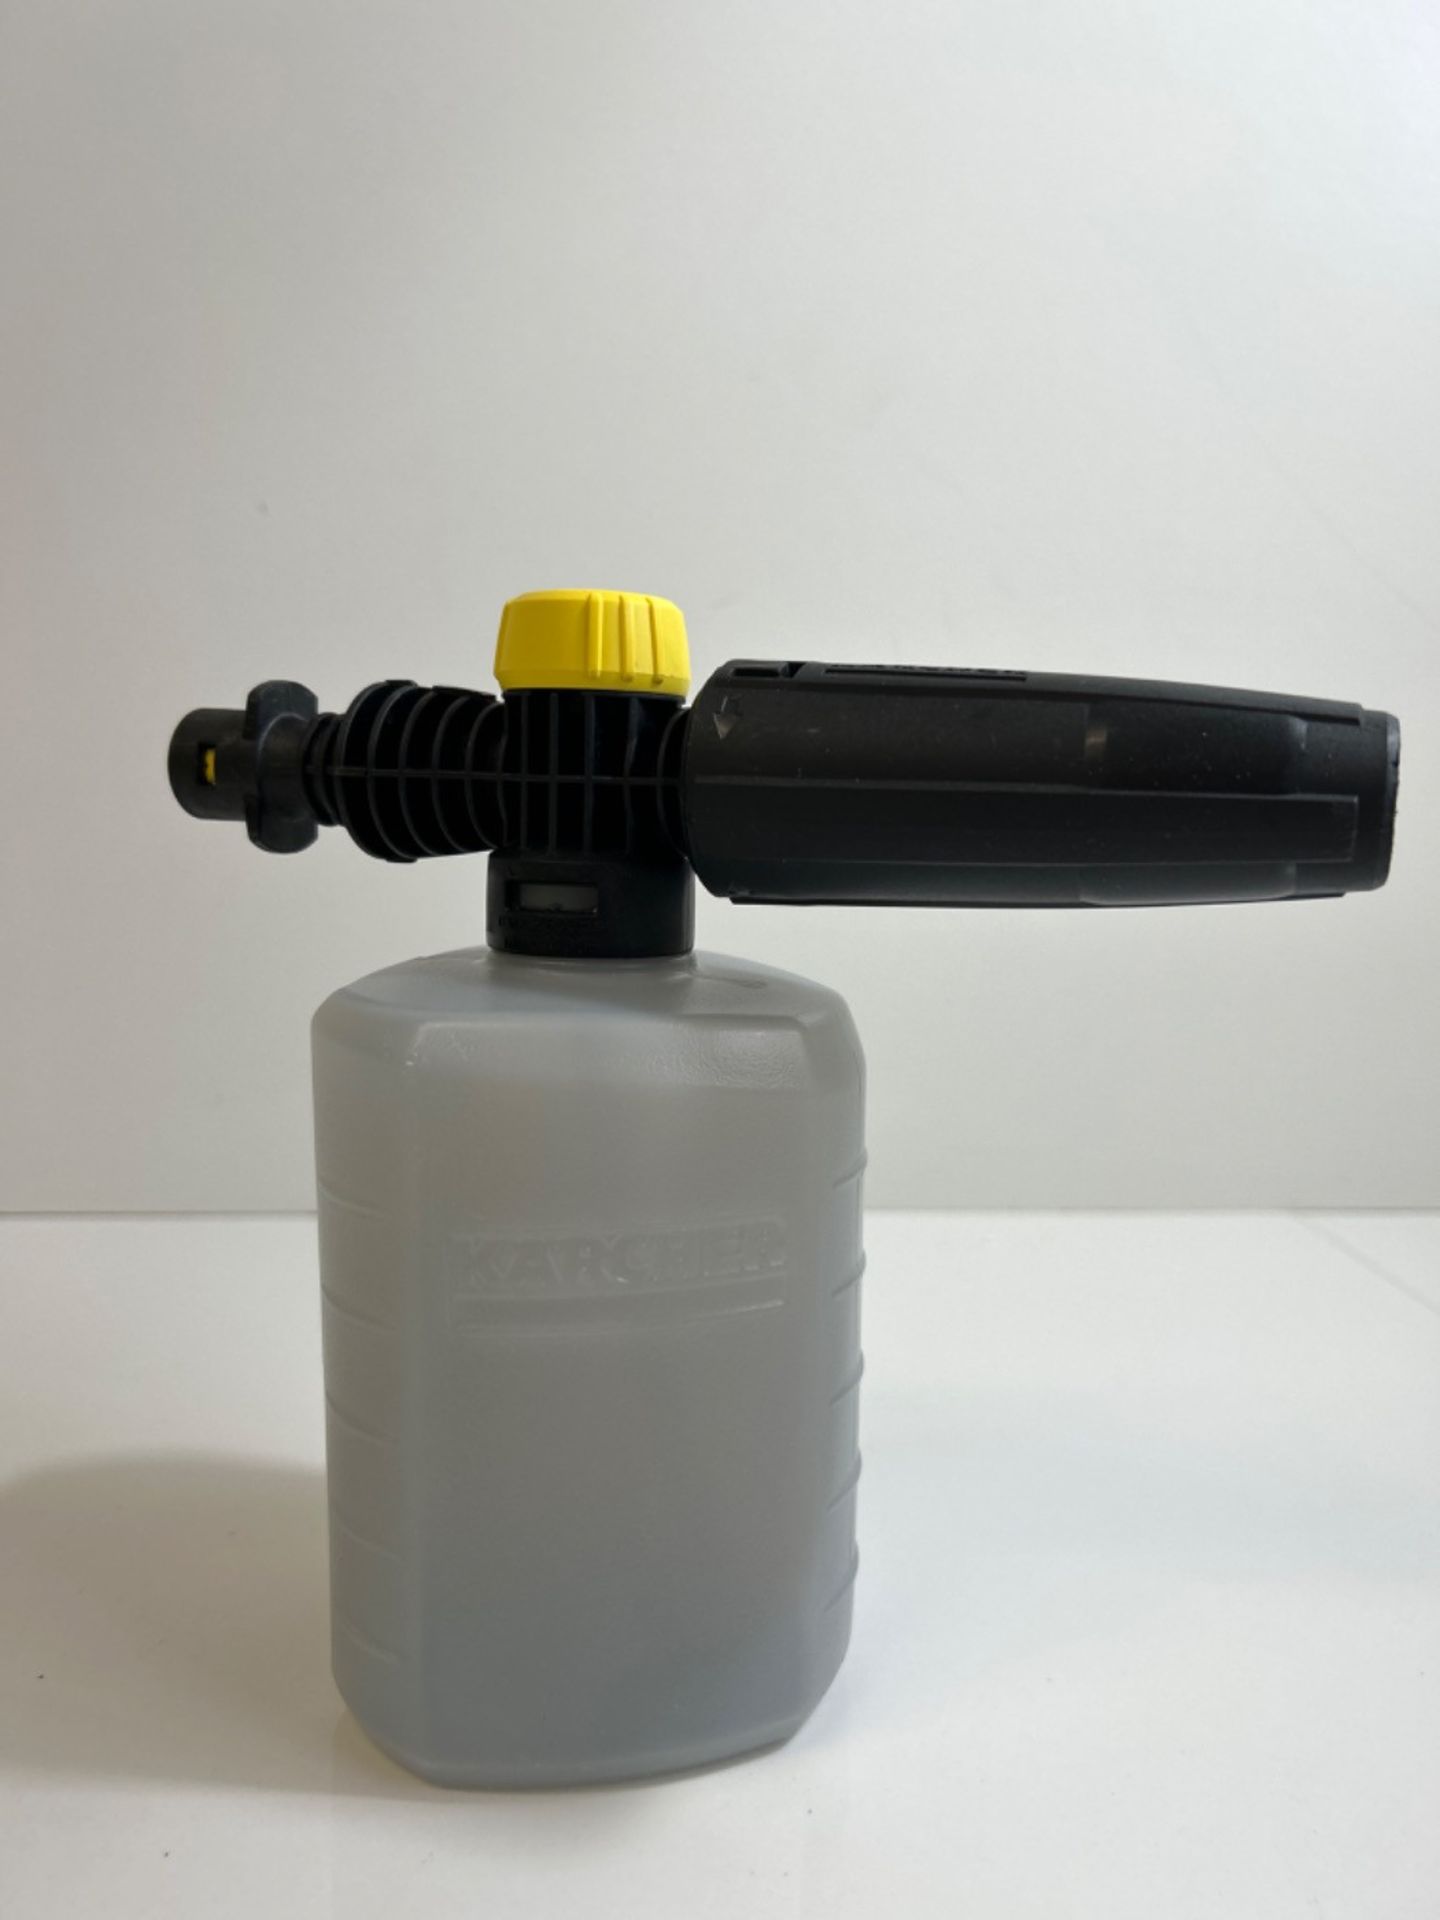 K??rcher FJ6 Foam Nozzle - Pressure Washer Accessory,Multi,0.6L - Image 2 of 3